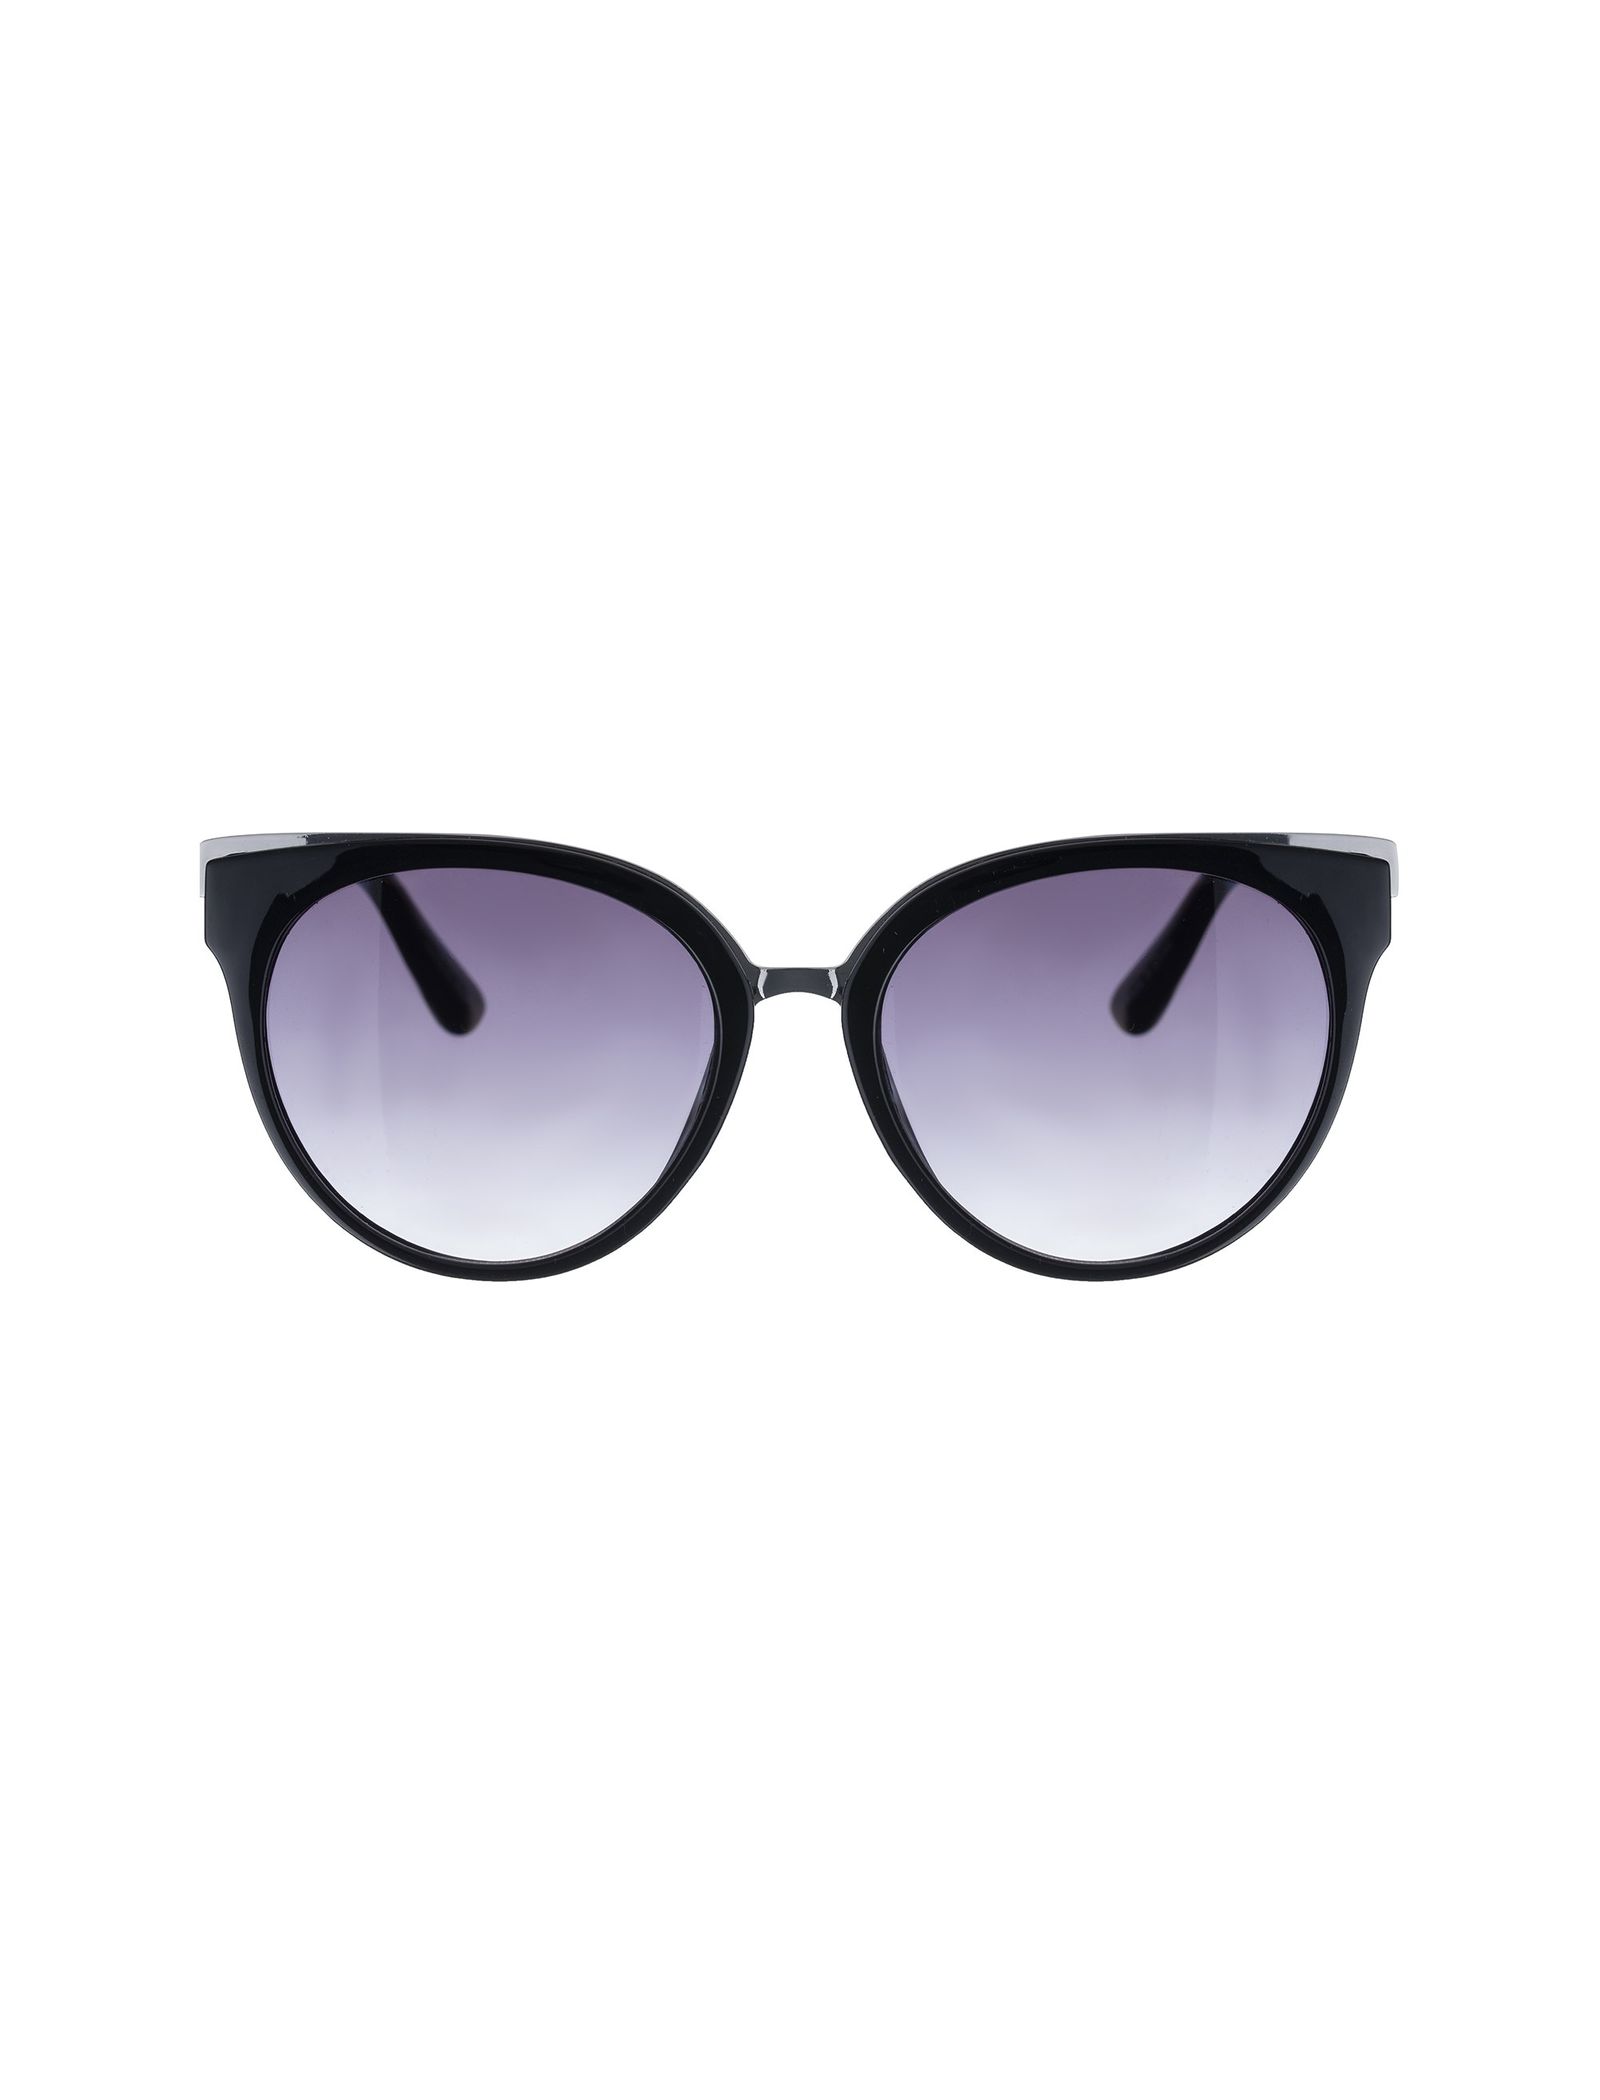 عینک آفتابی گربه ای زنانه - ورو مدا - مشکي - 2